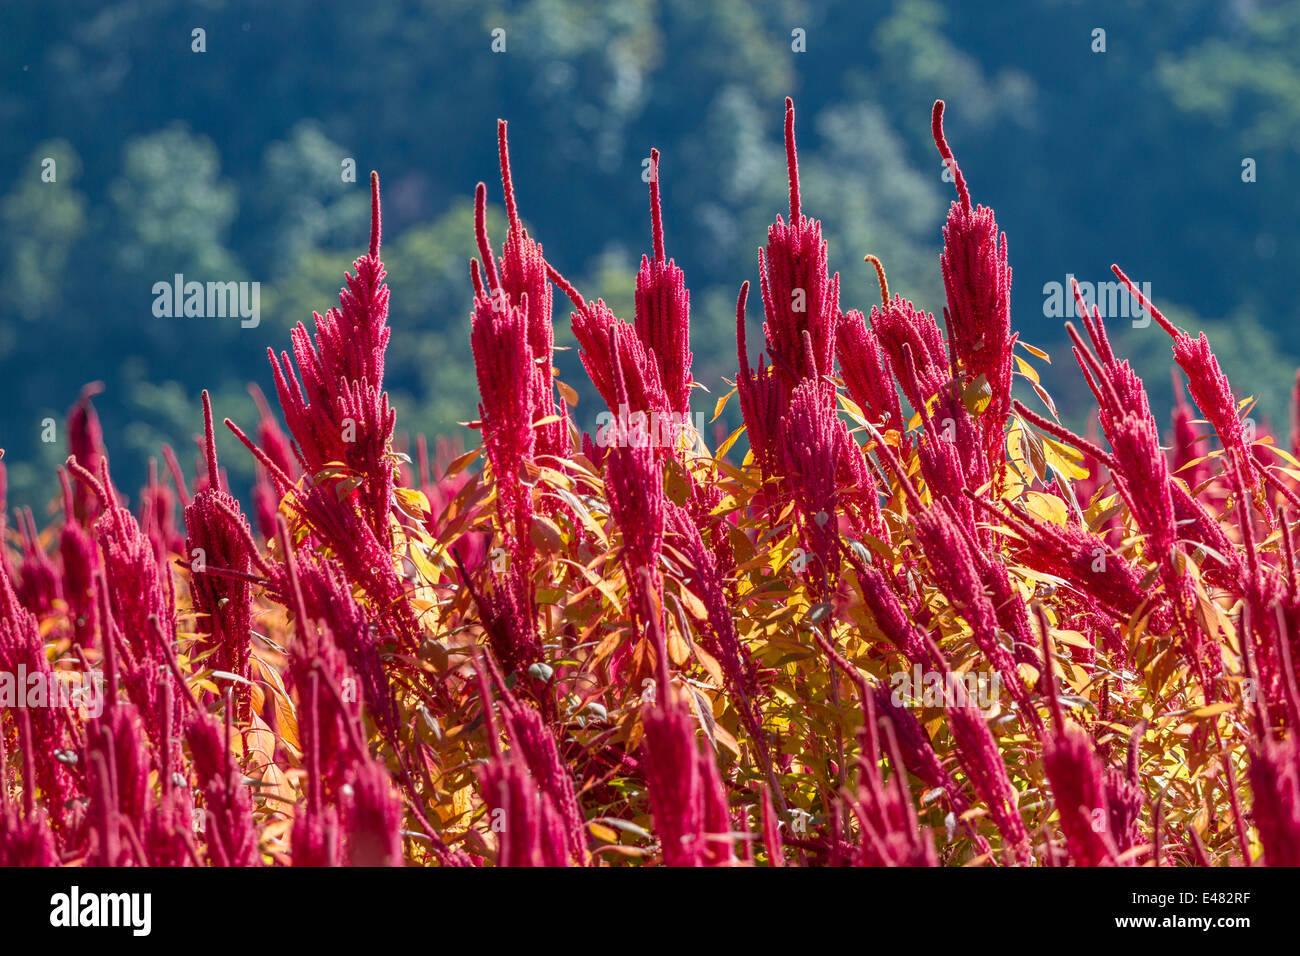 Amaranth seed heads, Uttarakhand, India. Stock Photo